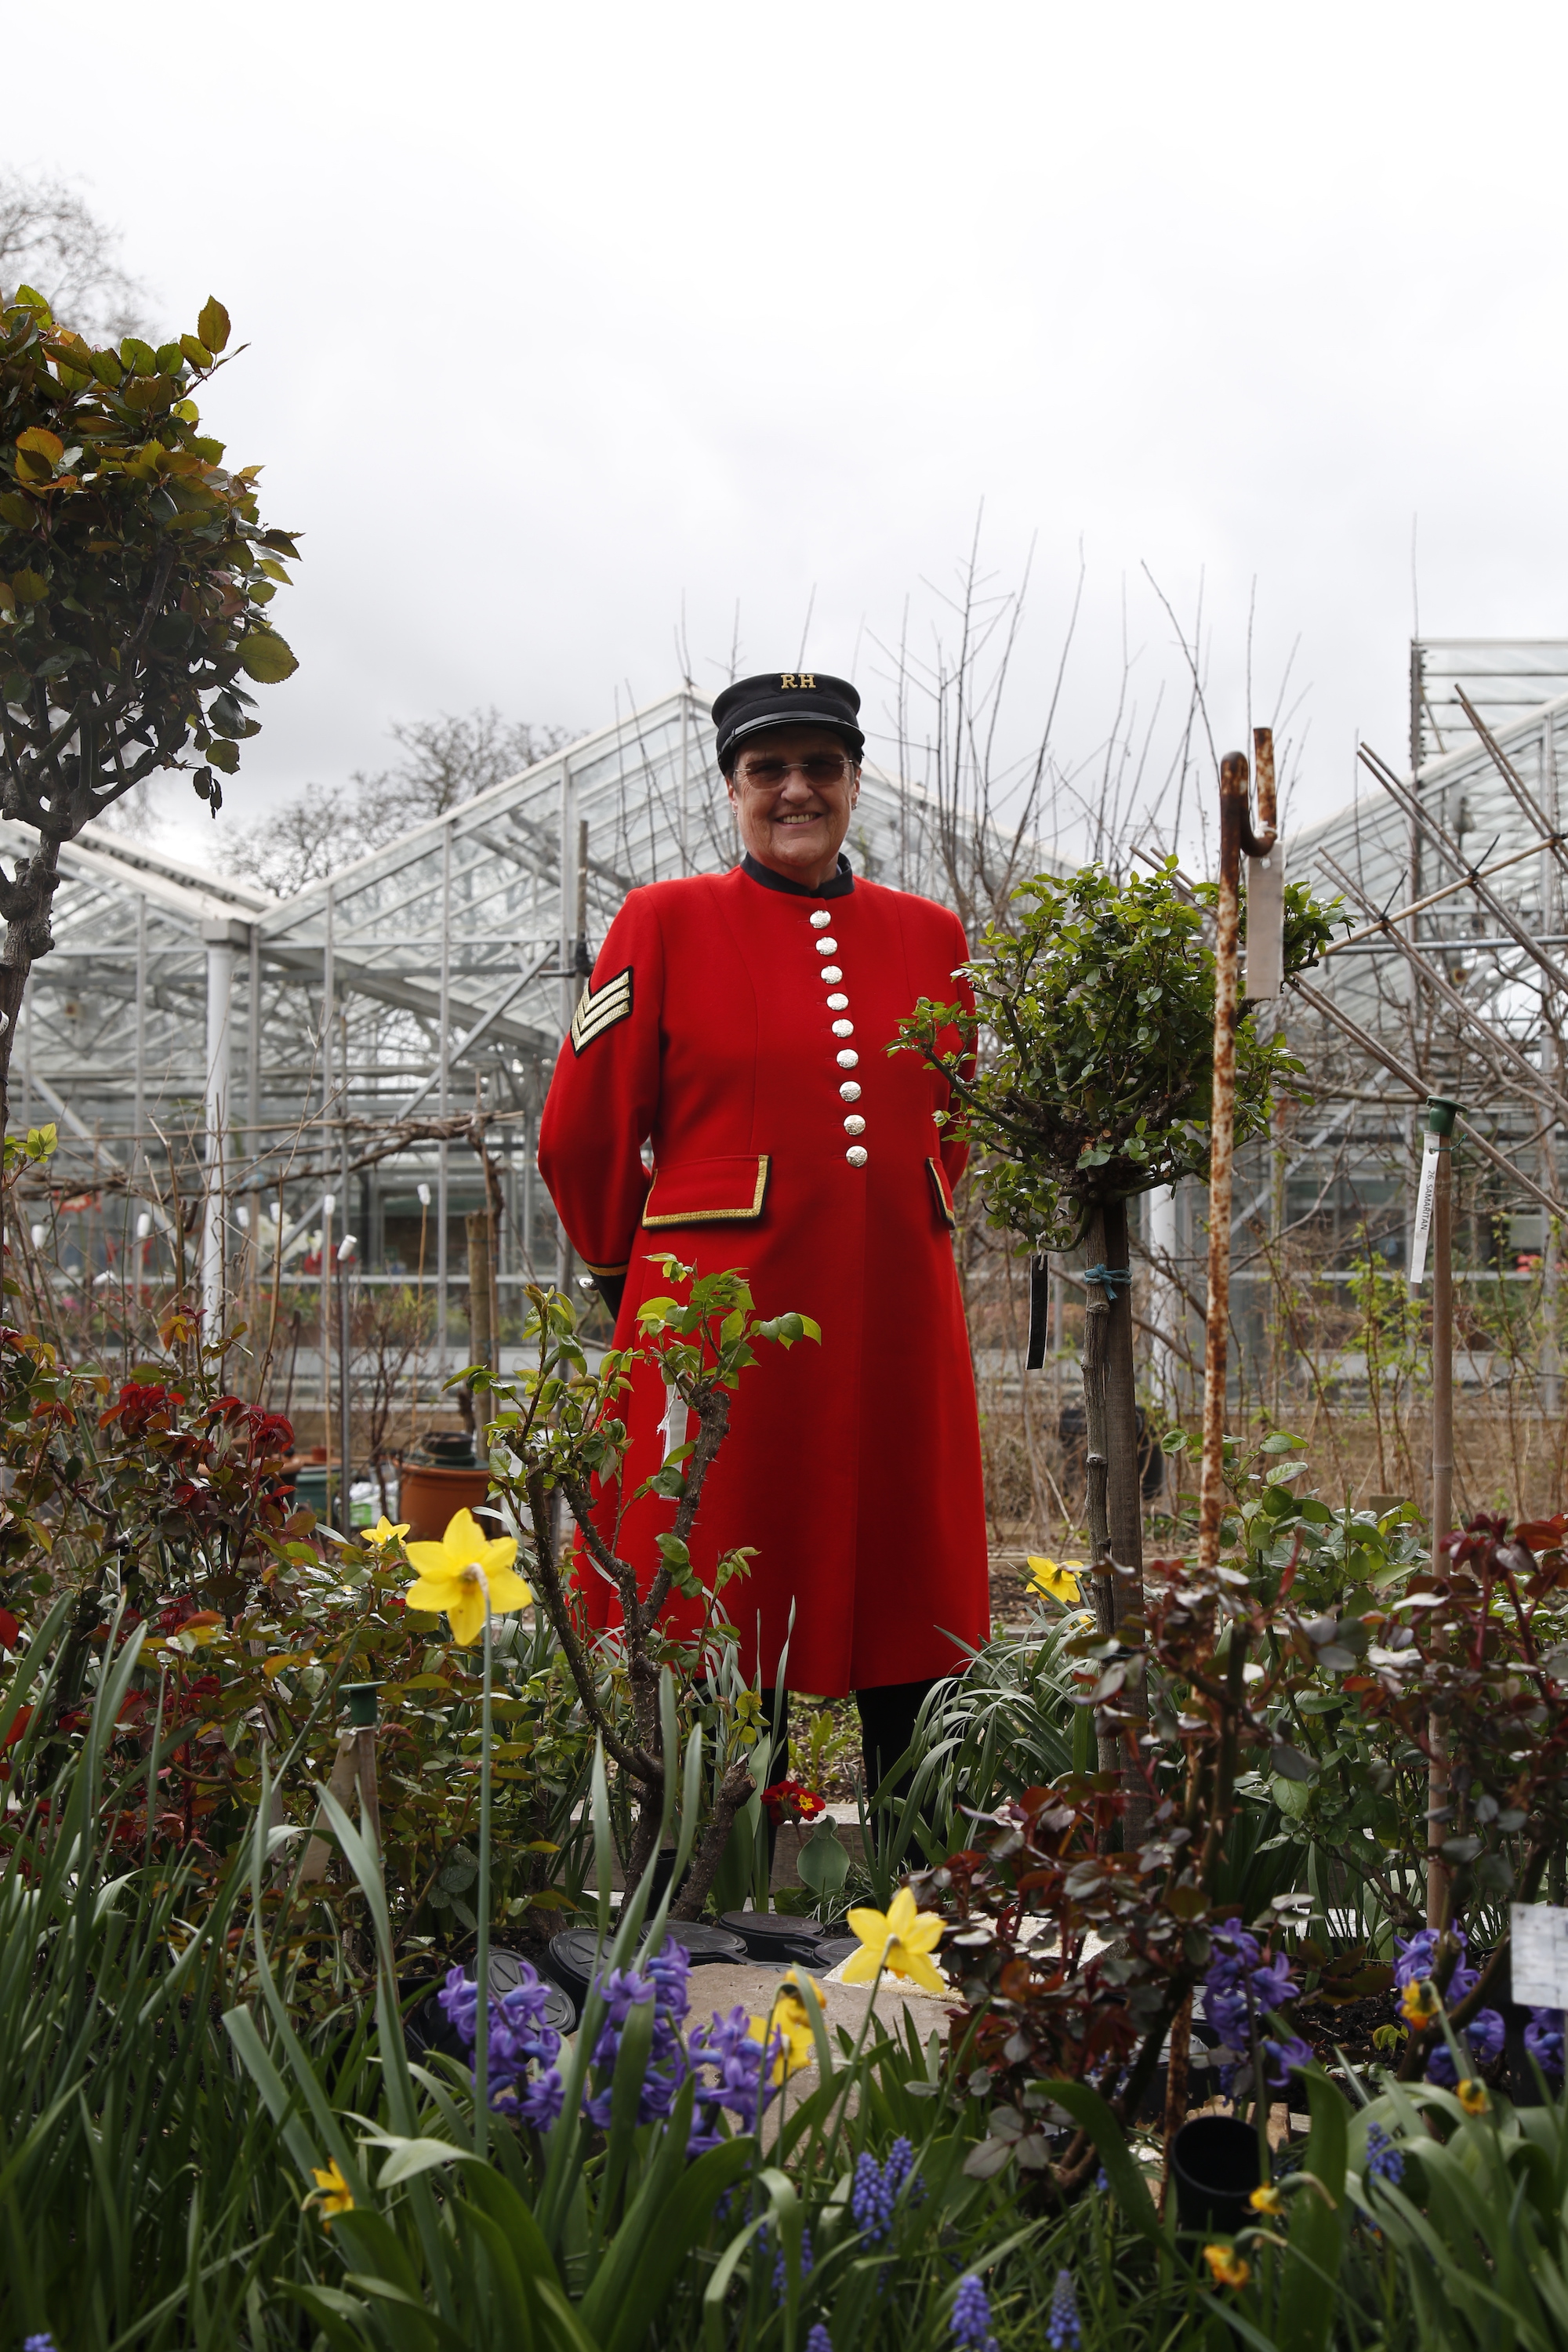 Chelsea Pensioner in scarlet uniform stood behind flowers